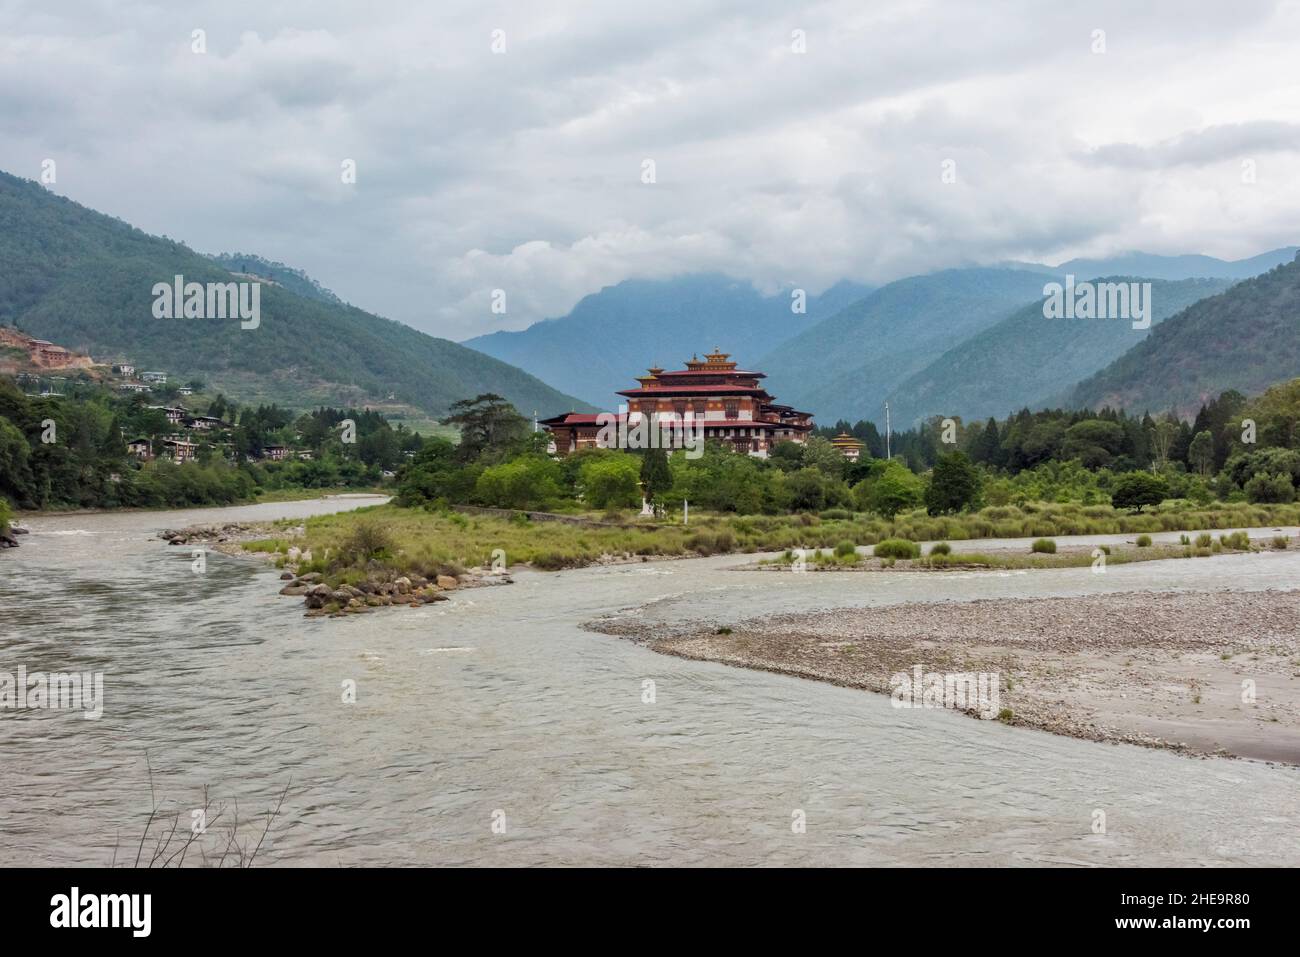 Punakha Dzong am Zusammenfluss von Pho Chhu (Vater Fluss) und Mo Chhu (Mutter Fluss) Flüsse, Punakha, Bhutan Stockfoto